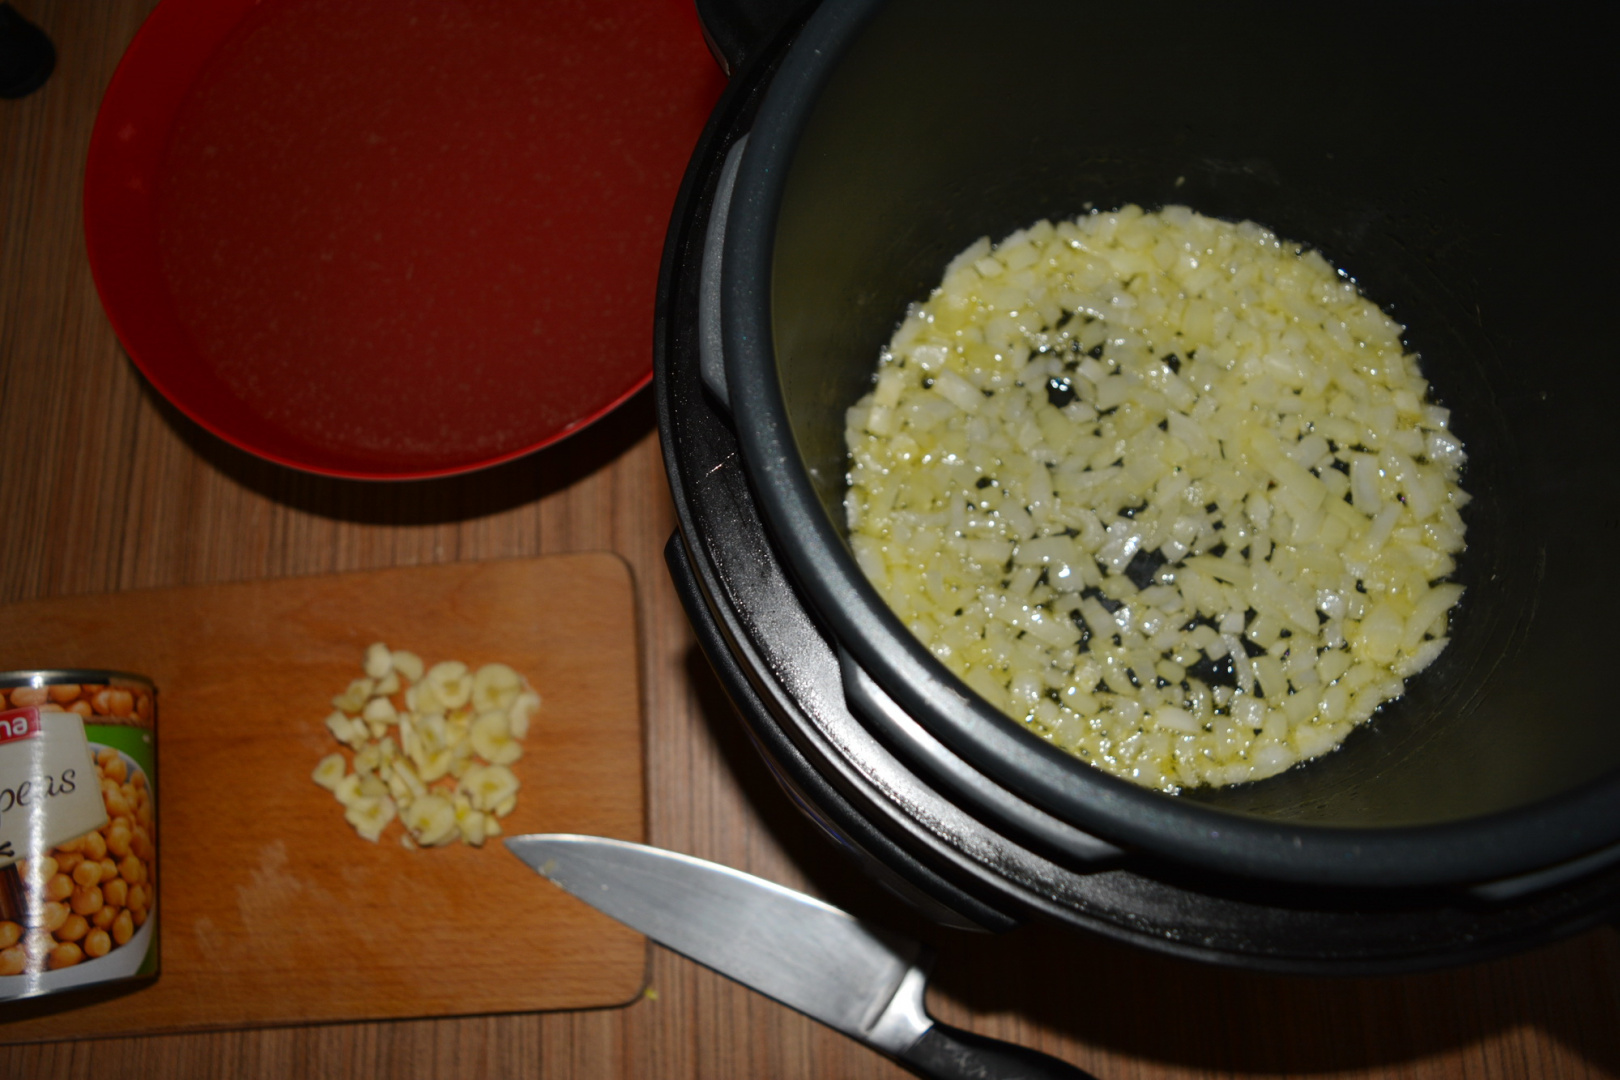 Supa crema de ciuperci cu naut, gatita la Multicookerul Crock-Pot Express